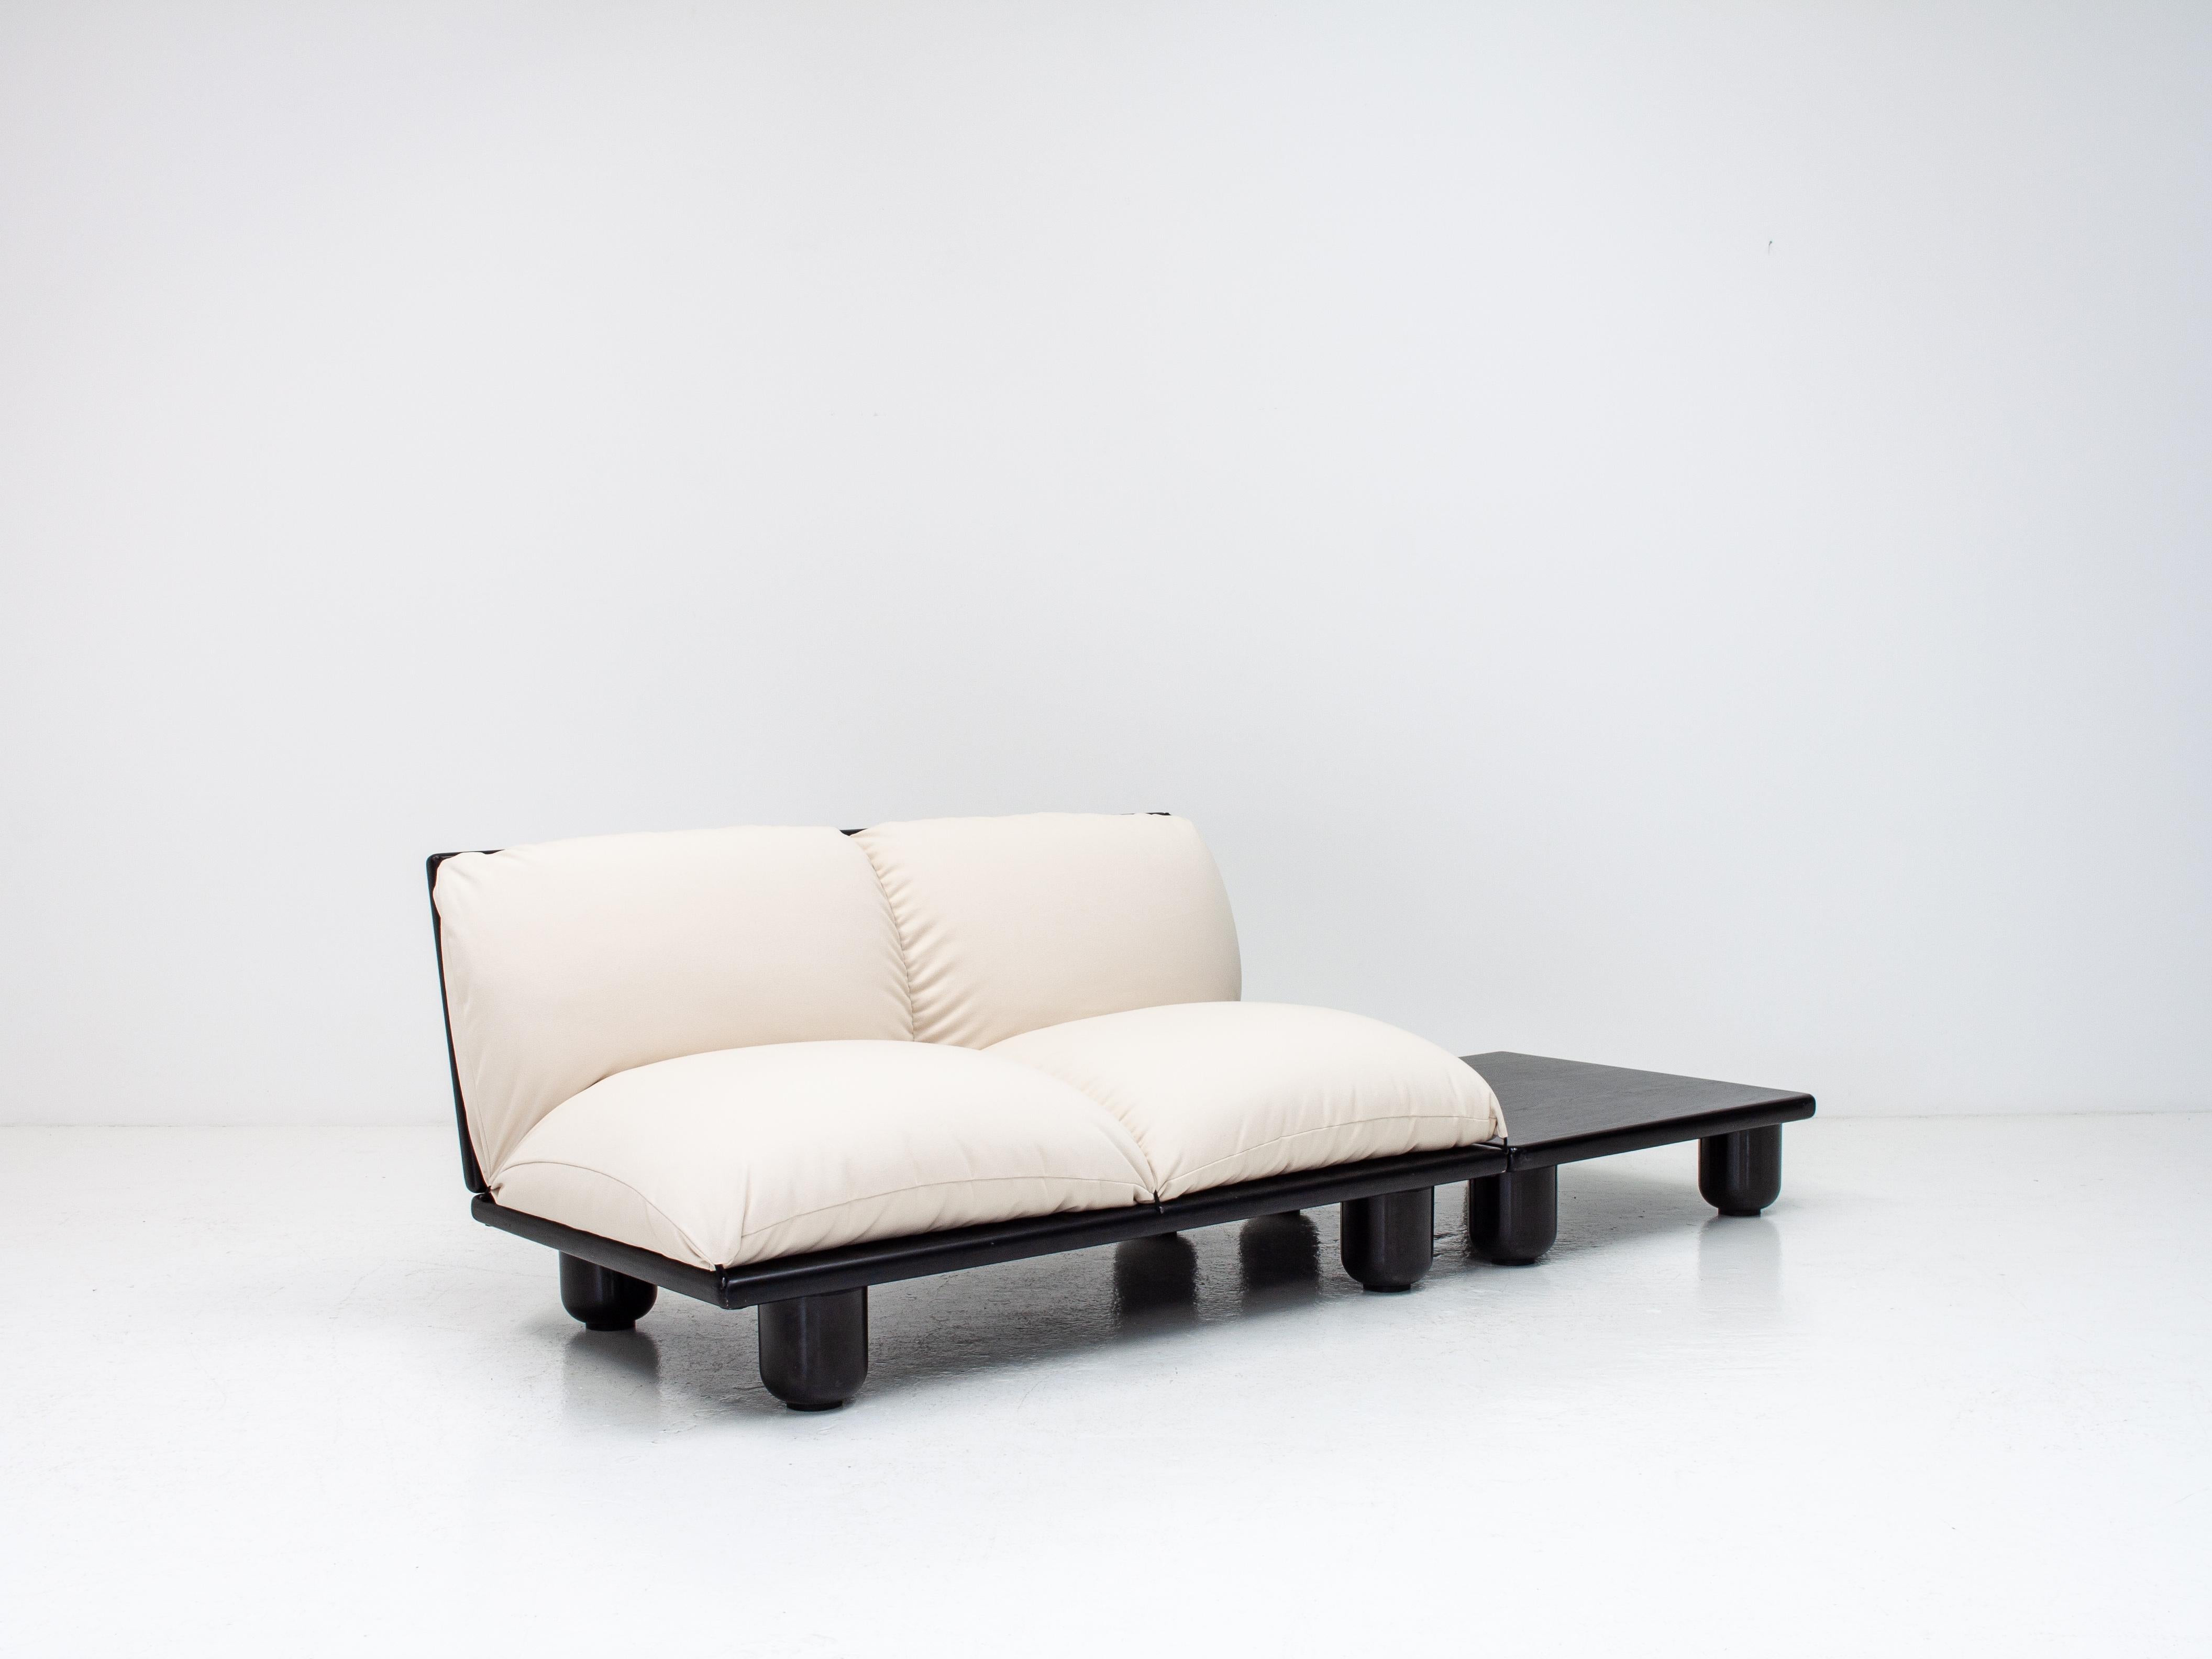 Fabric Carlo Bartoli 'Blop' Sofa & Table for Rossi Di Albizzate Italy, in Pierre Frey